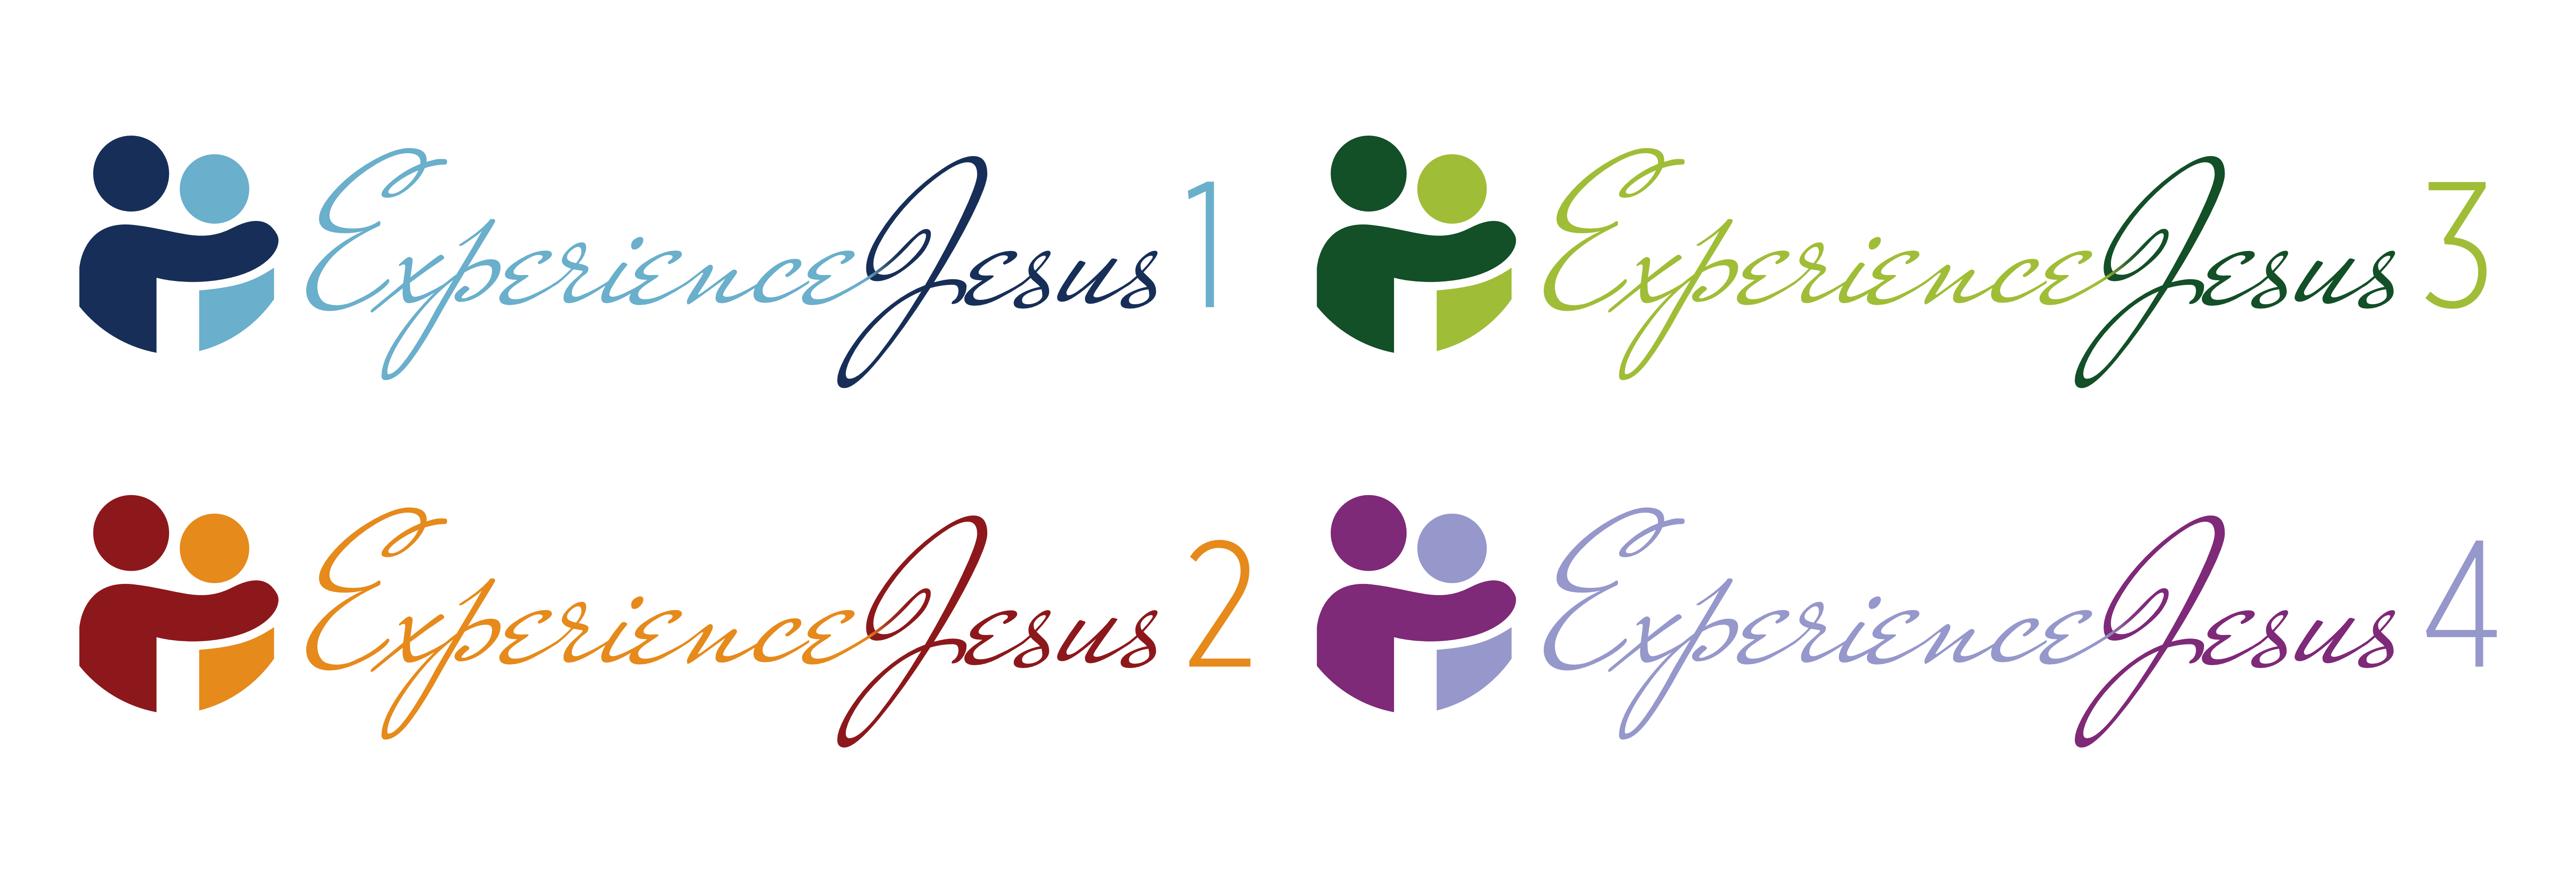 Experience Jesus Series